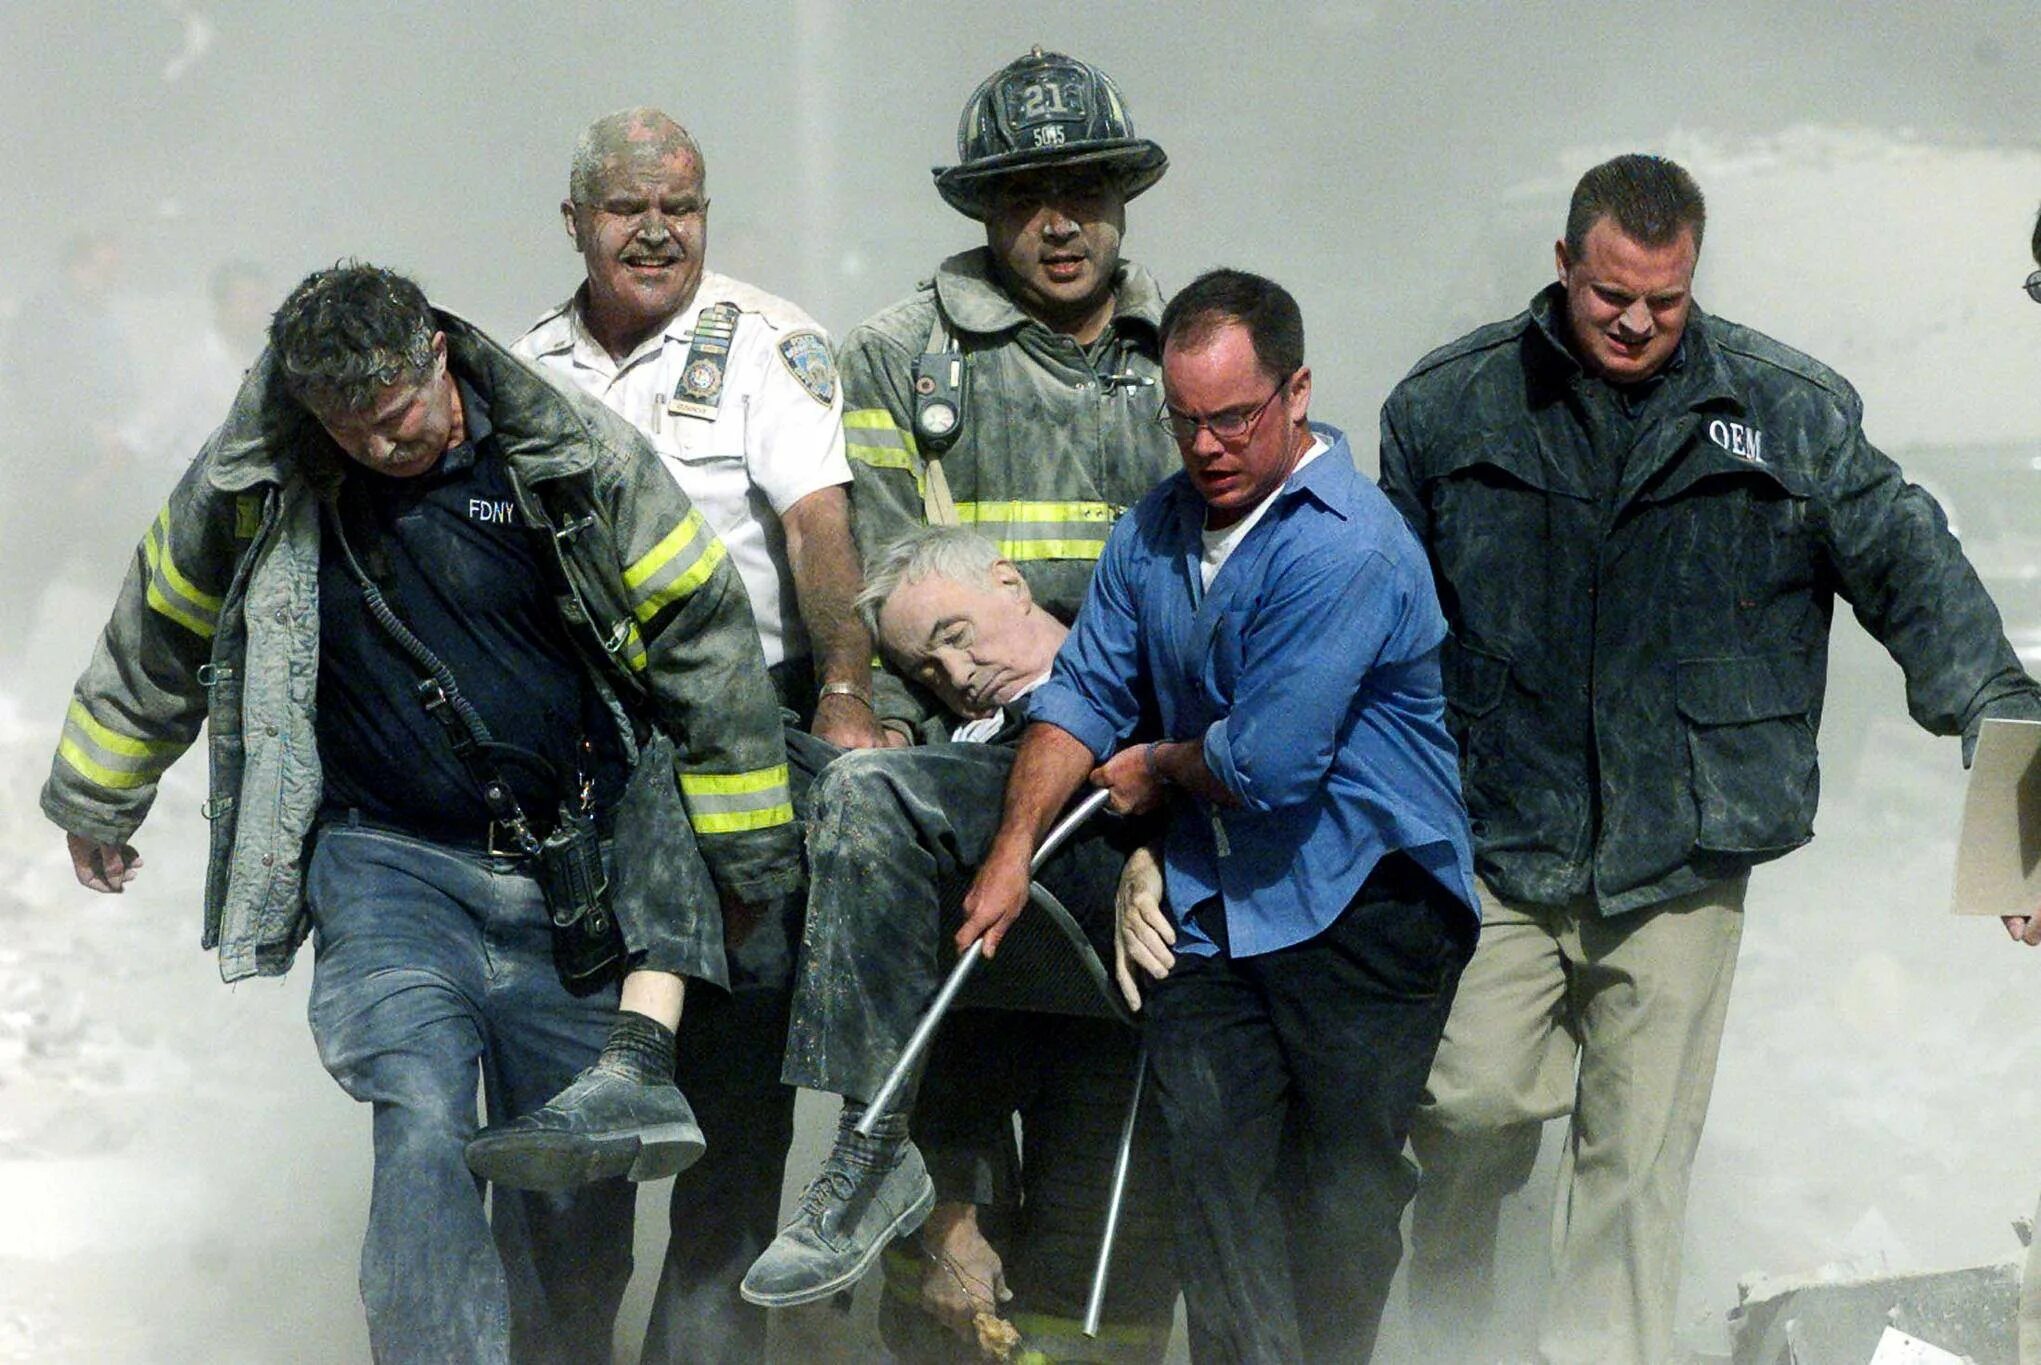 Что случилось в 2001 году. Спасатели 11 сентября 2001. Теракт в Нью-Йорке 11 сентября 2001. Башни Близнецы 11 сентября жертвы. Число погибших 11 сентября 2001.